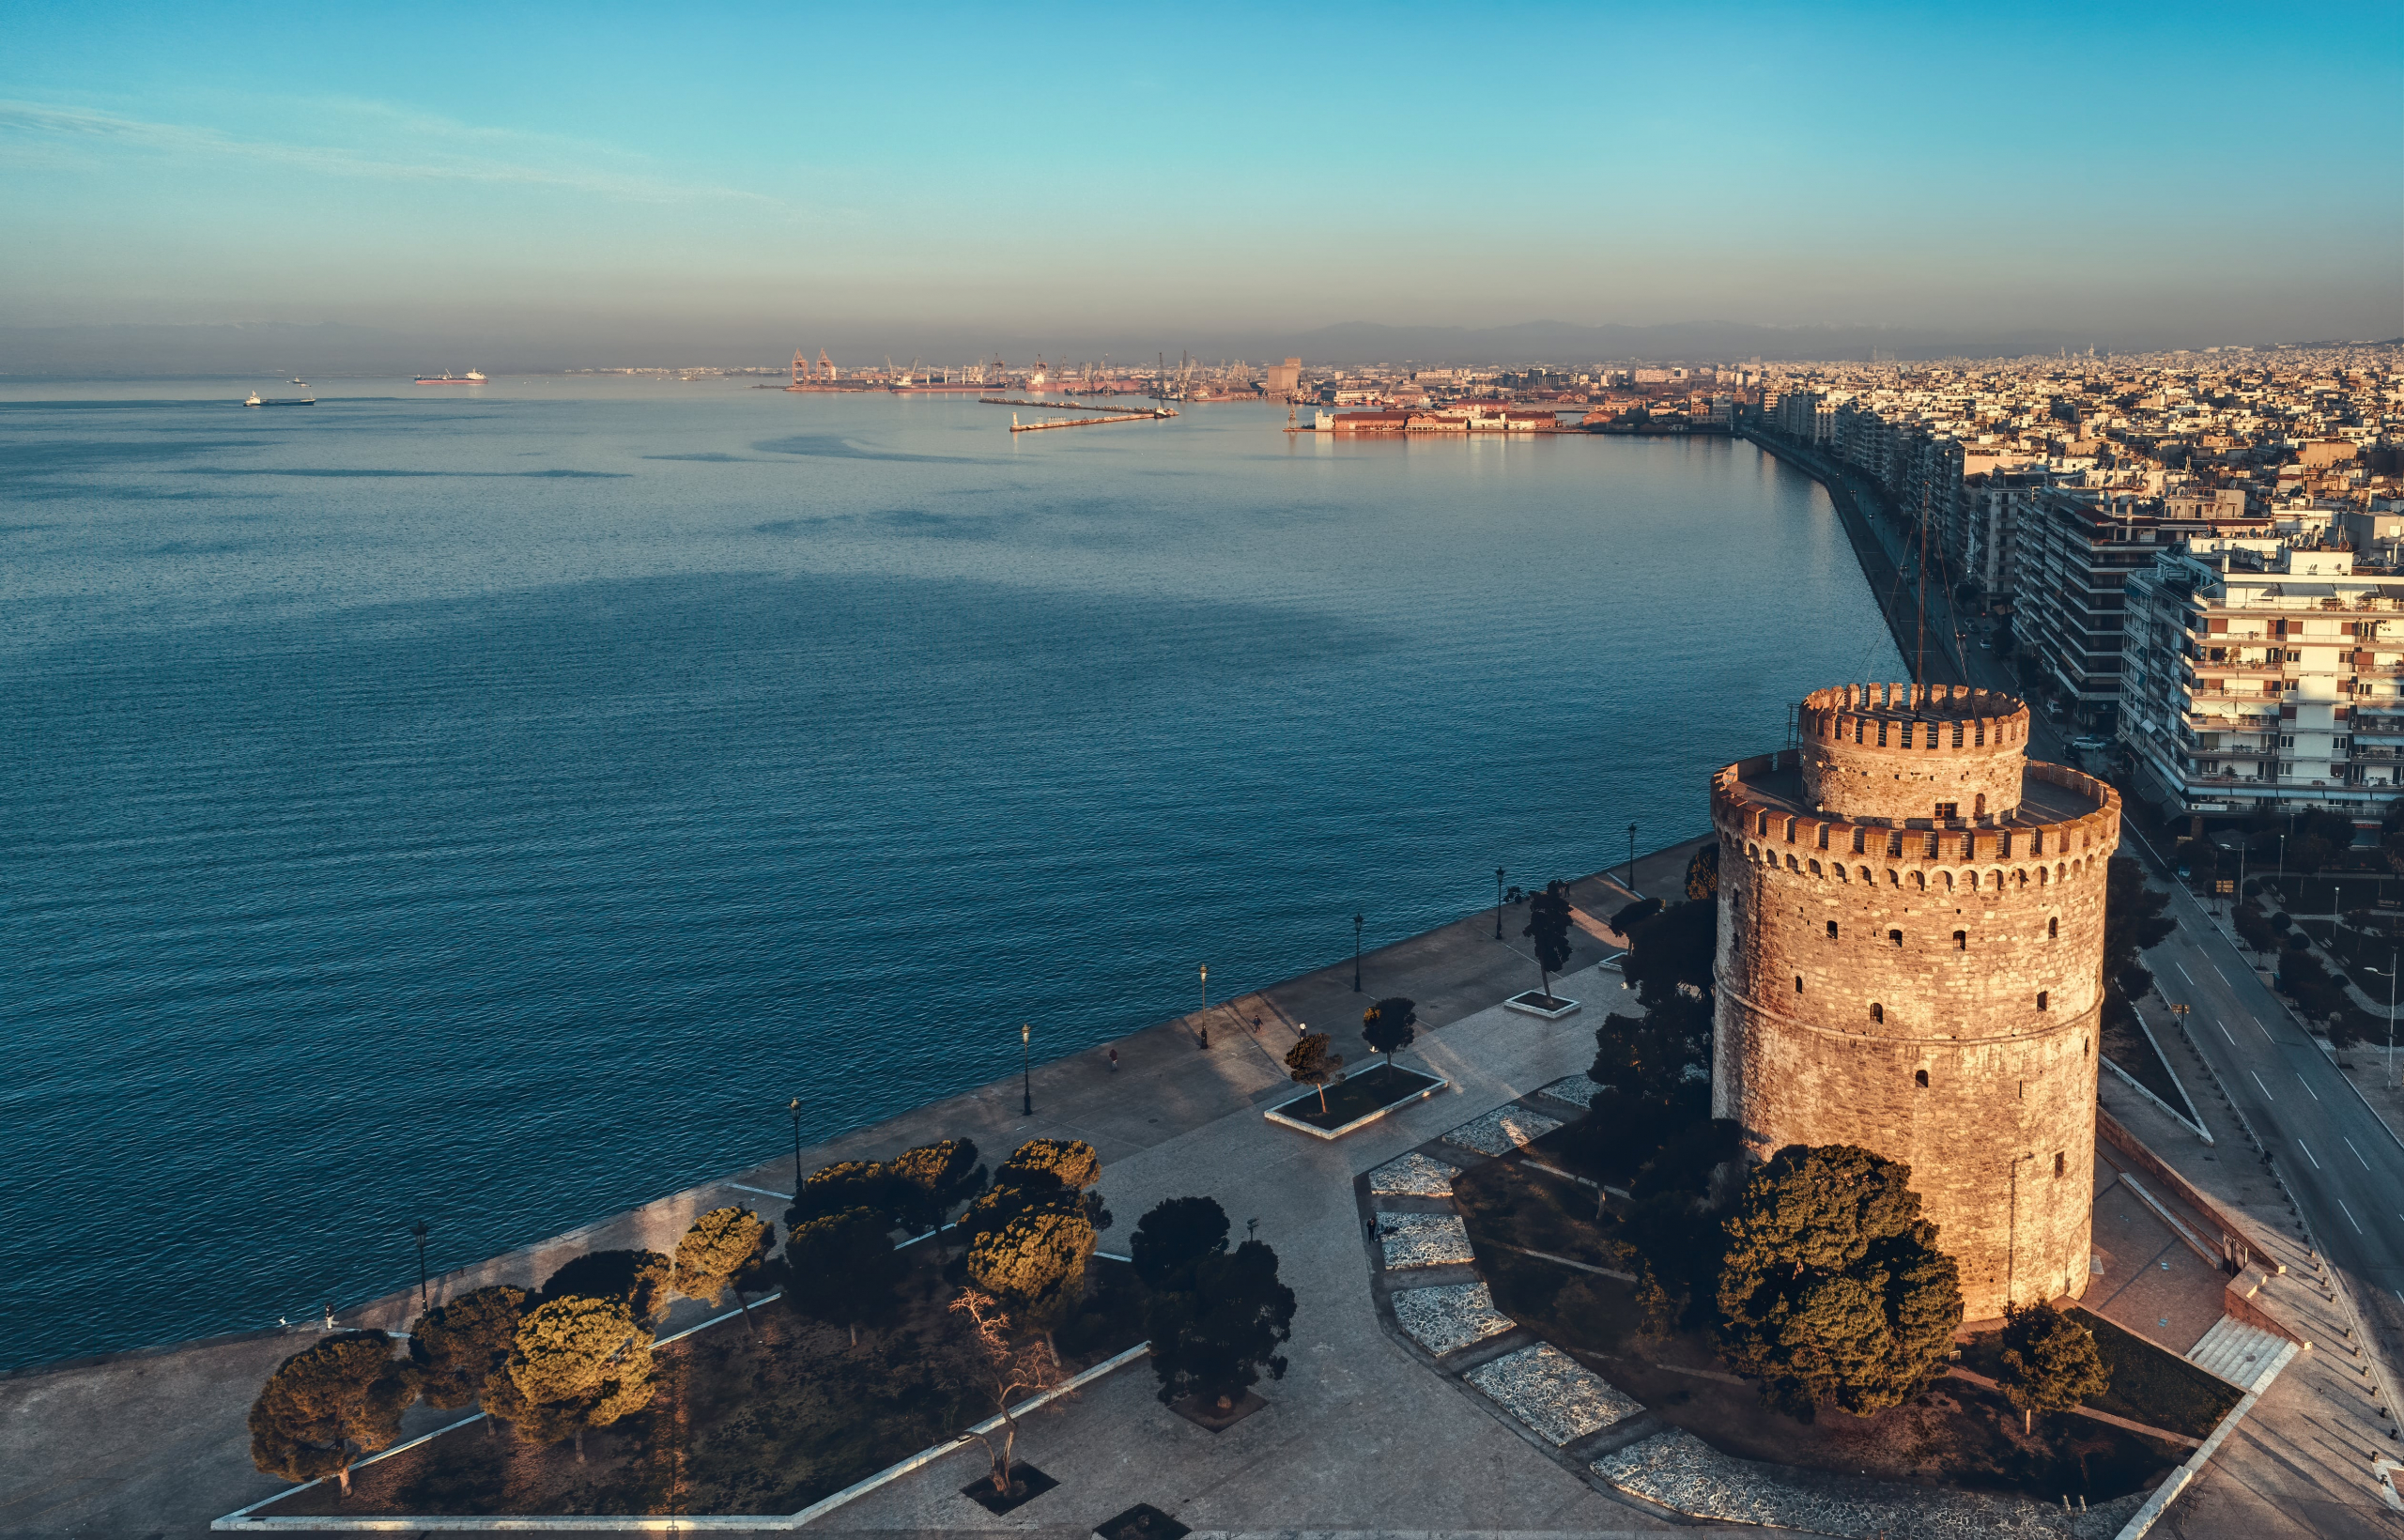 Προχωρά ο διαγωνισμός για το ντεκ στην παλιά παραλία Θεσσαλονίκης